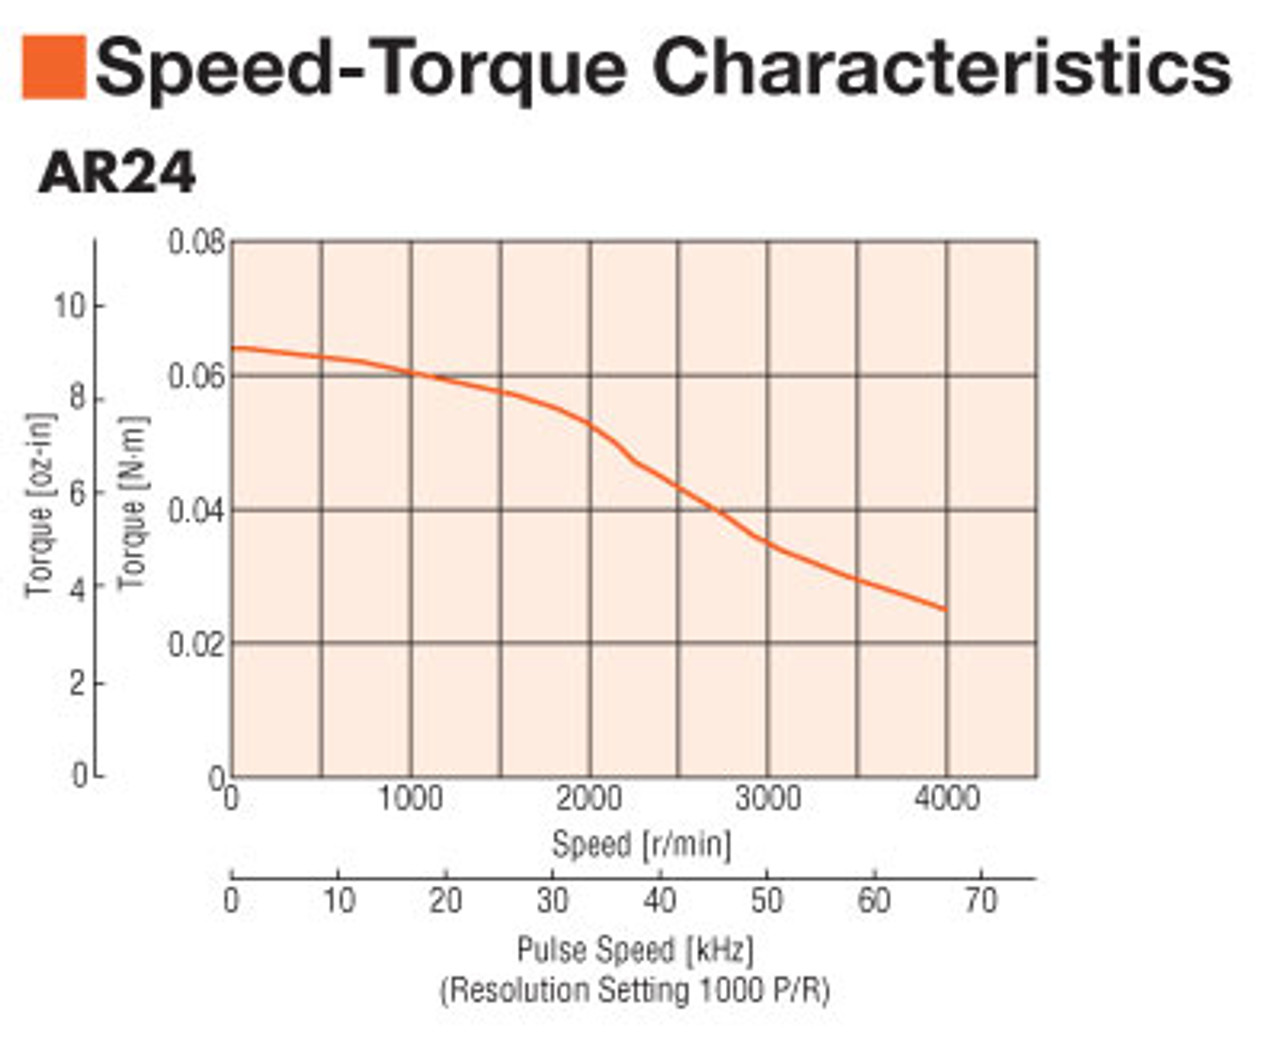 ARM24SBK - Speed-Torque